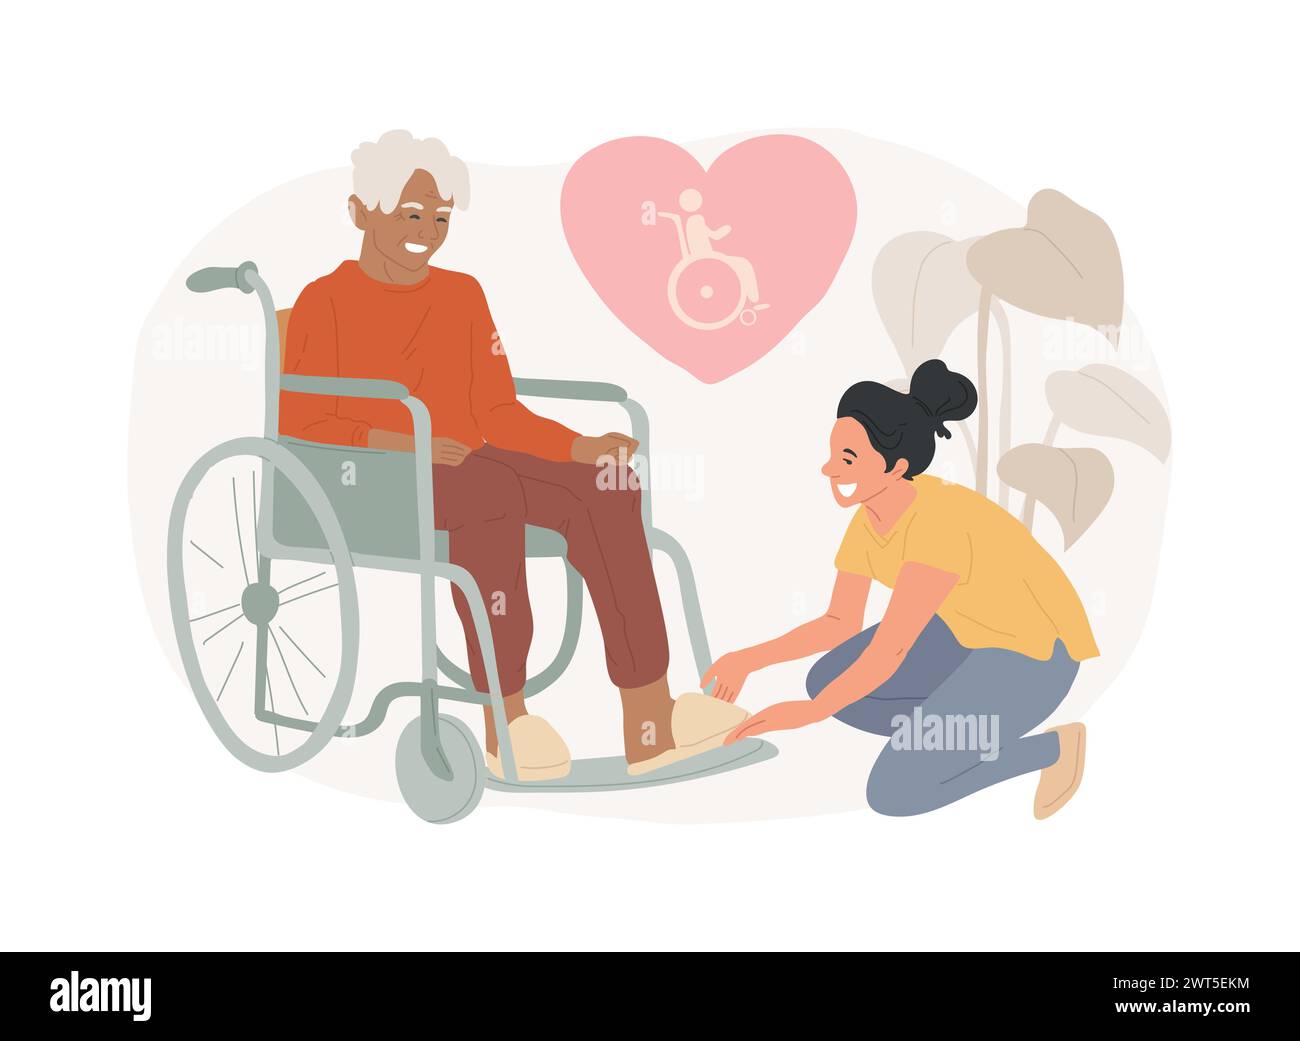 Cura dell'illustrazione vettoriale del concetto isolato disabilitato. Assistenza alla disabilità, sindrome di Down, anziano su sedia a rotelle, aiuto per anziani, concetto di vettore dei servizi professionali di assistenza domiciliare. Illustrazione Vettoriale